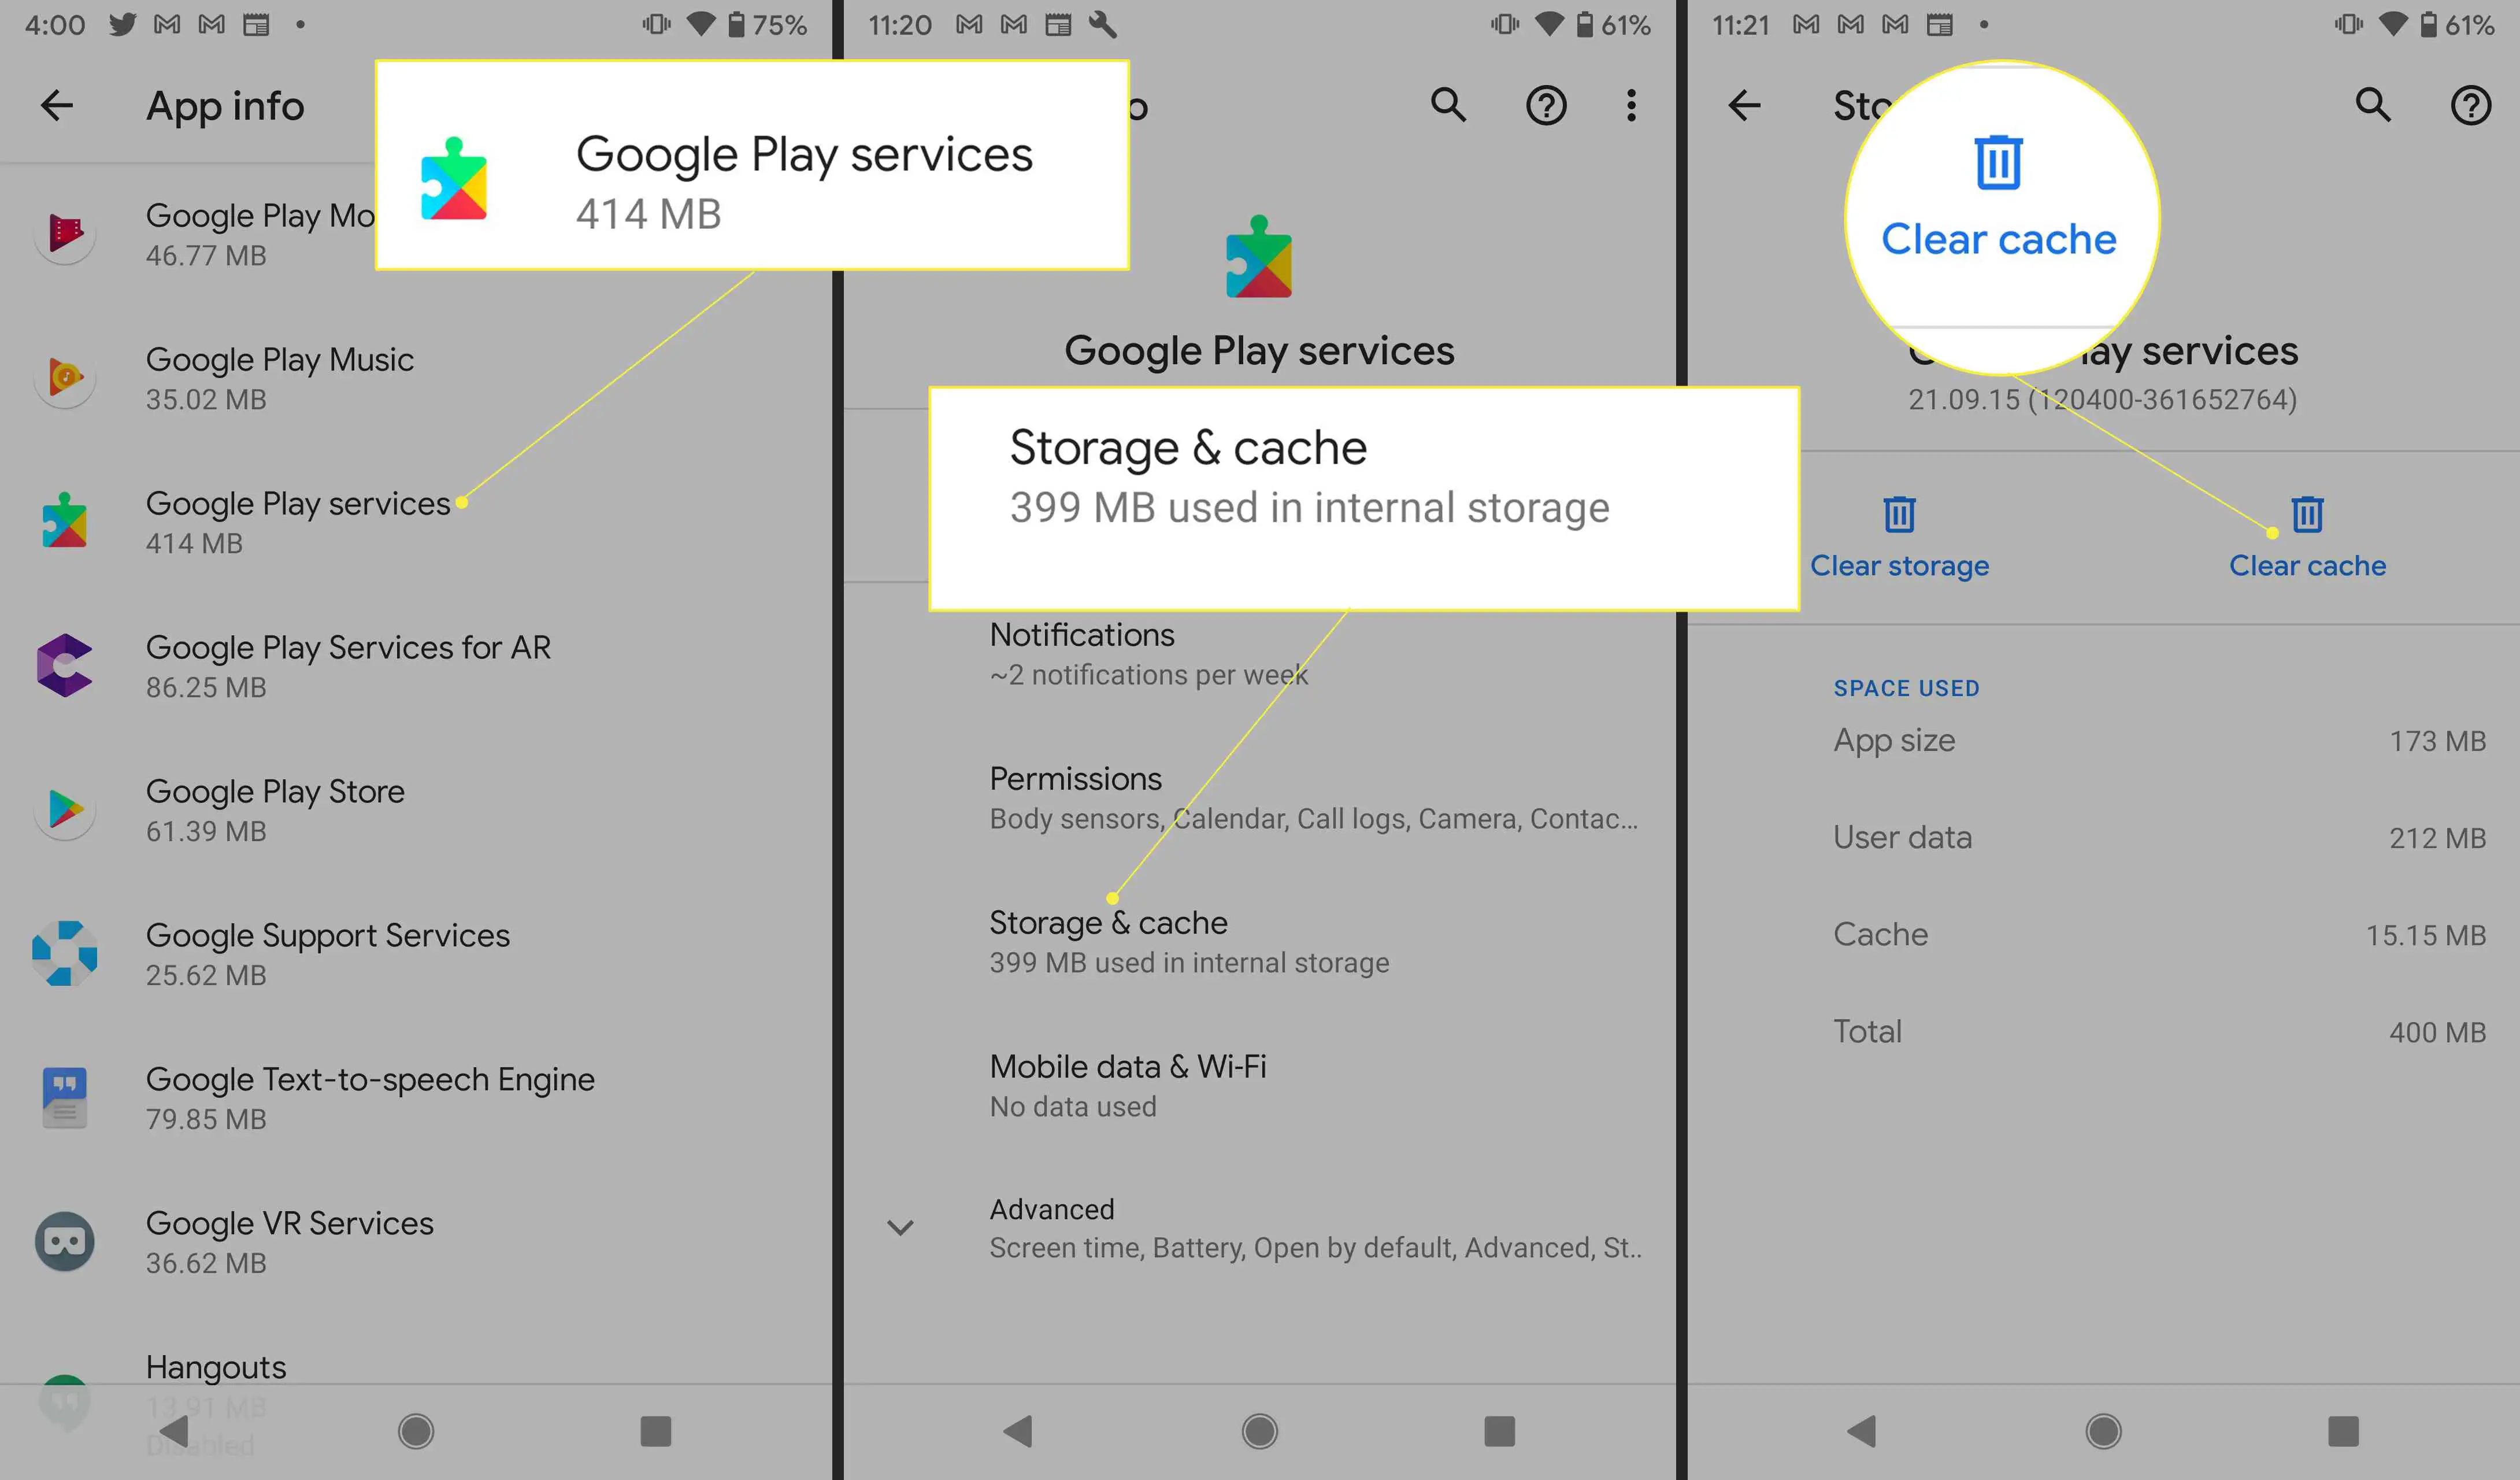 Configurações do Android com "Google Play Services", "Armazenamento e cache" e "Limpar cache" destacados